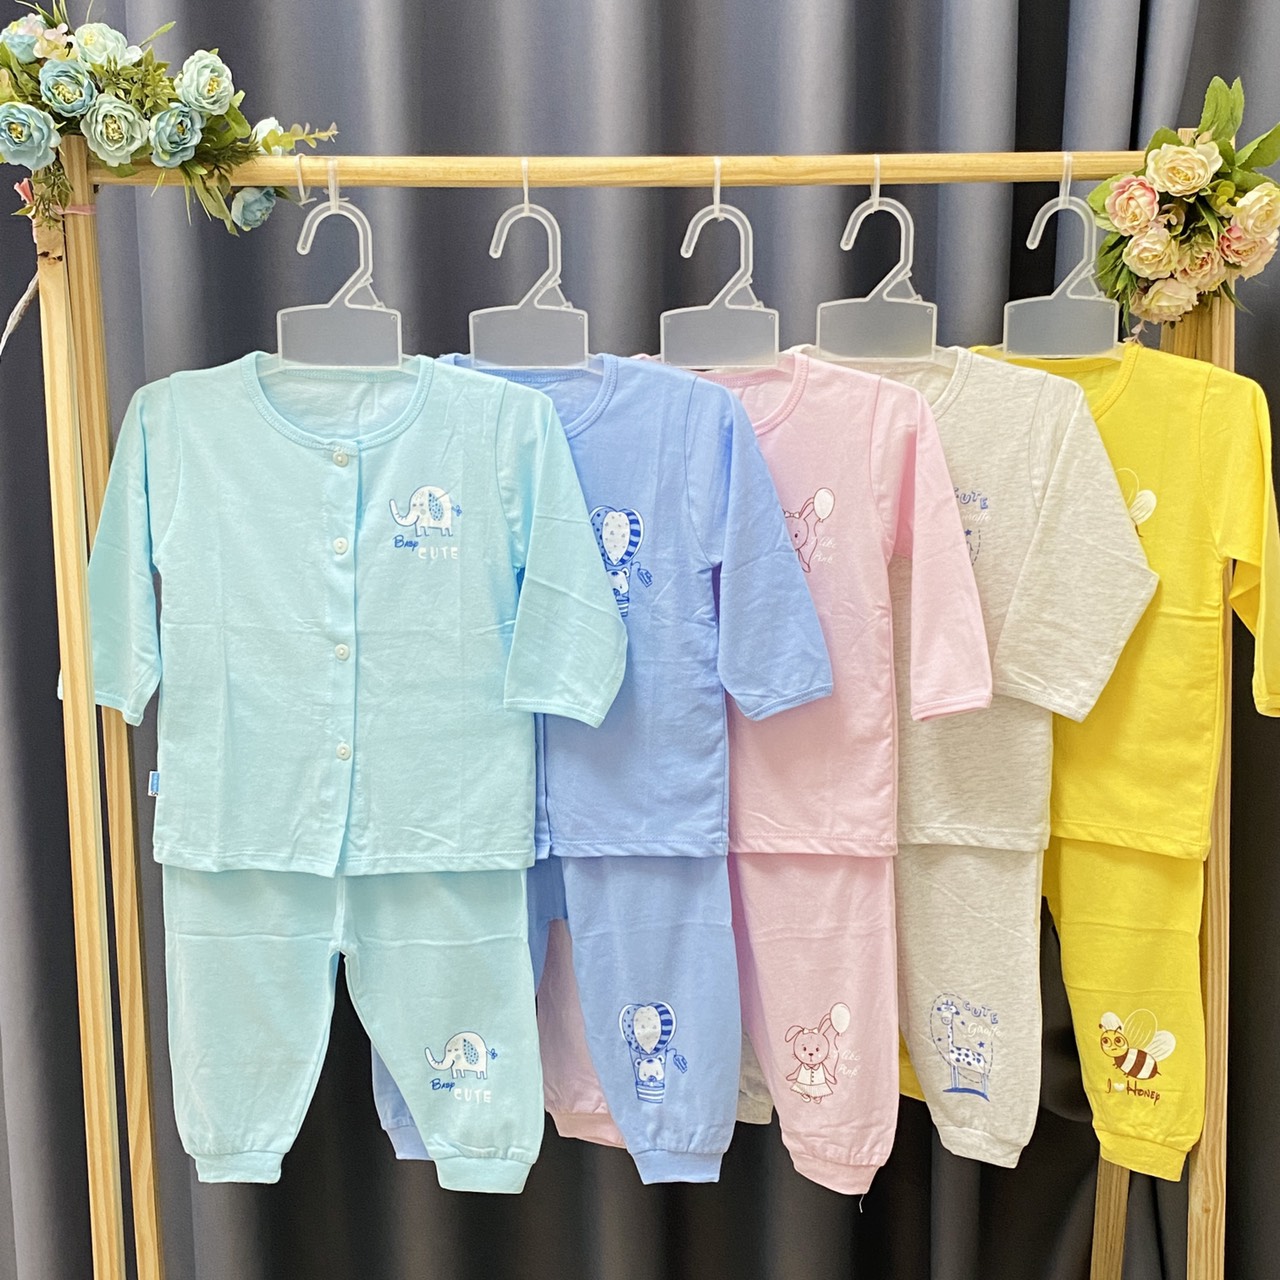 Combo 3 Bộ áo quần sơ sinh cotton Thái Hà Thịnh | Mẫu Tay Dài Cài Nút Giữa | Size 1,2,3,4,5 cho bé sơ sinh -12kg| Chất vải mềm, mịn, đẹp